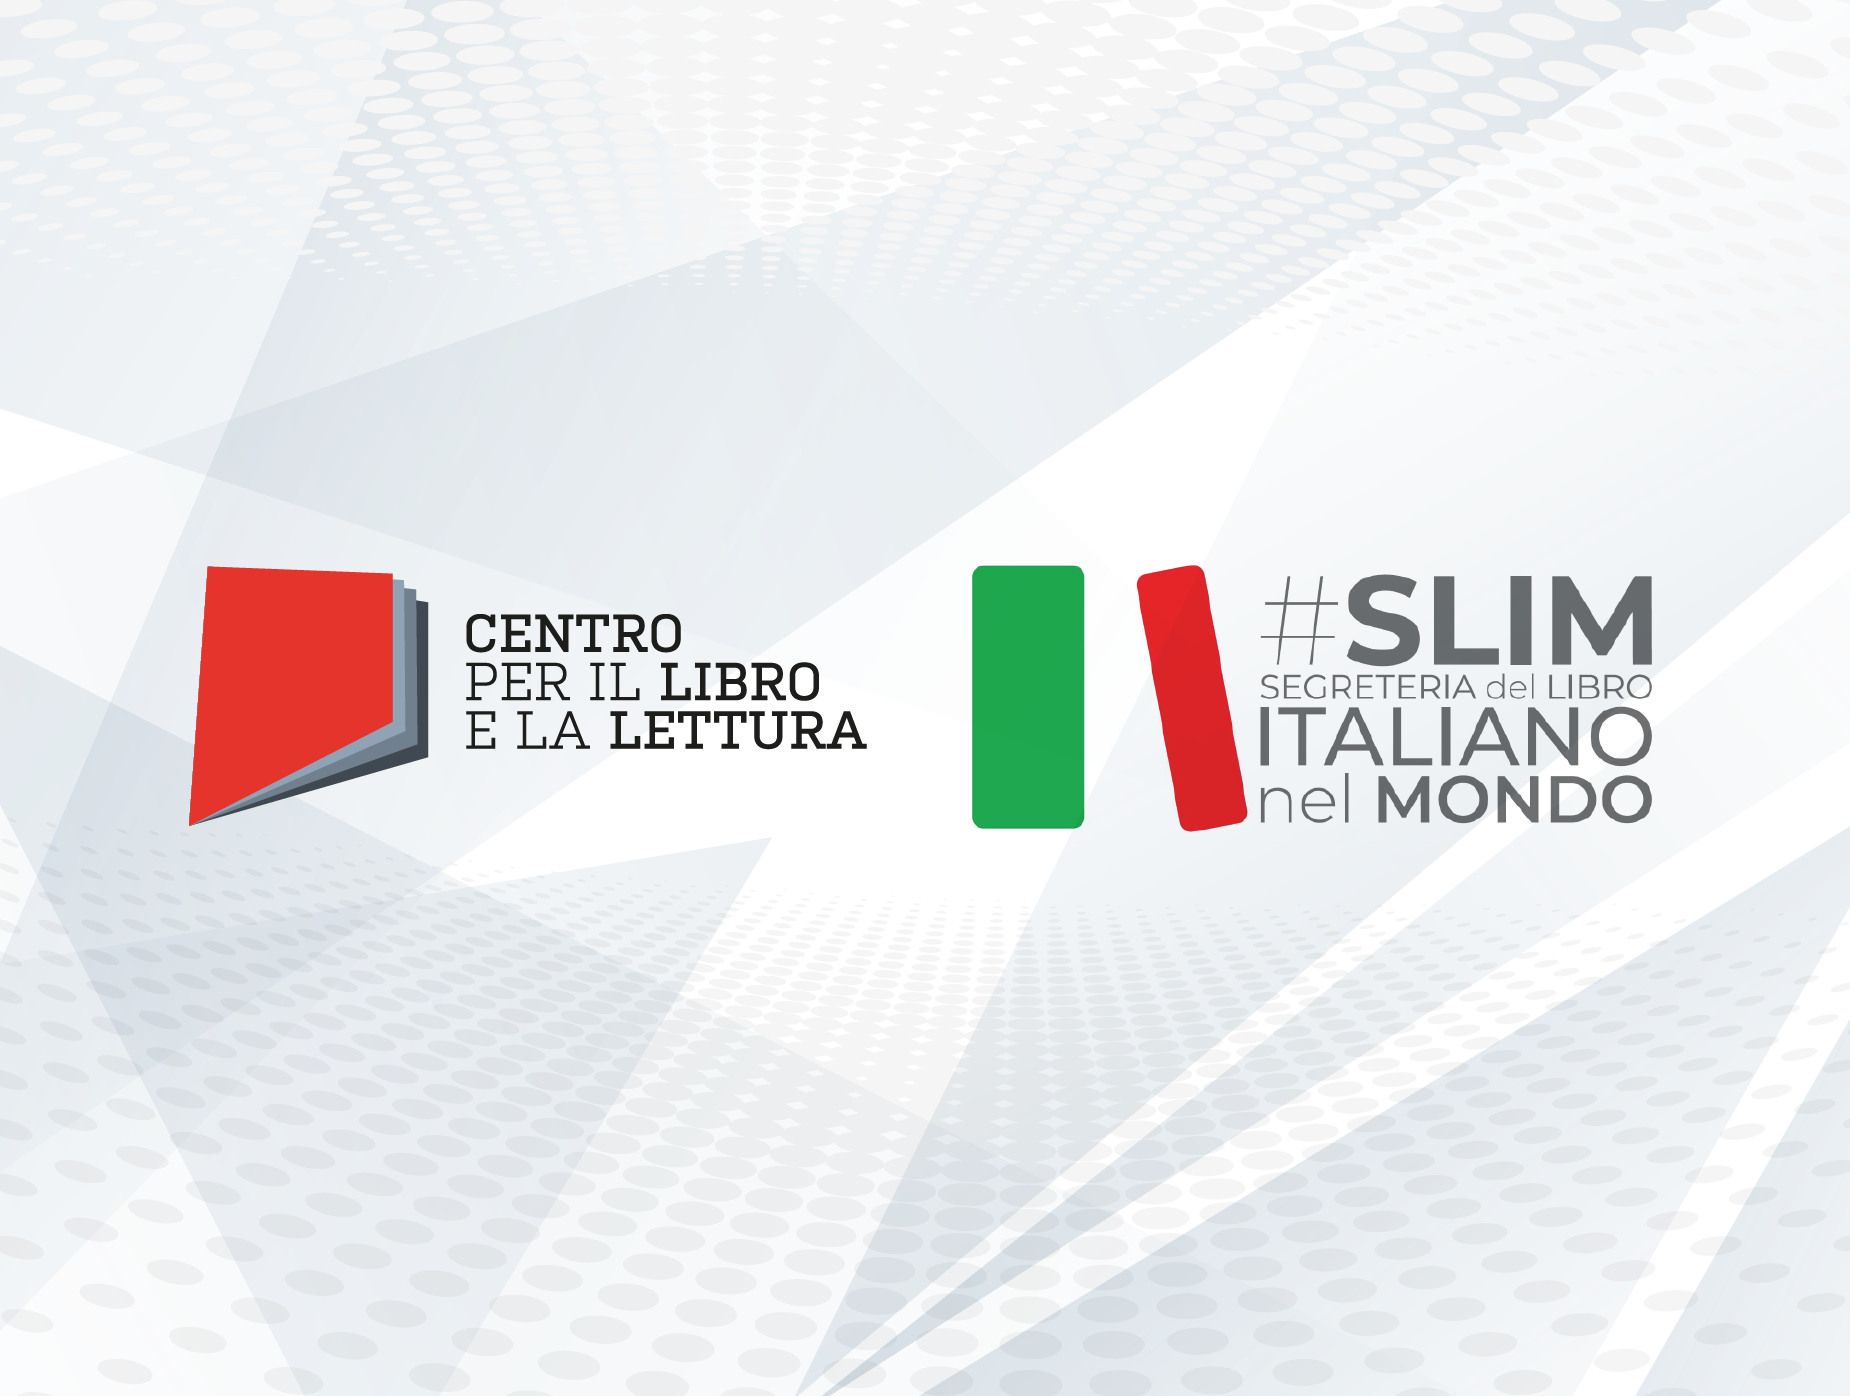 SLIM – Segreteria del Libro Italiano nel Mondo